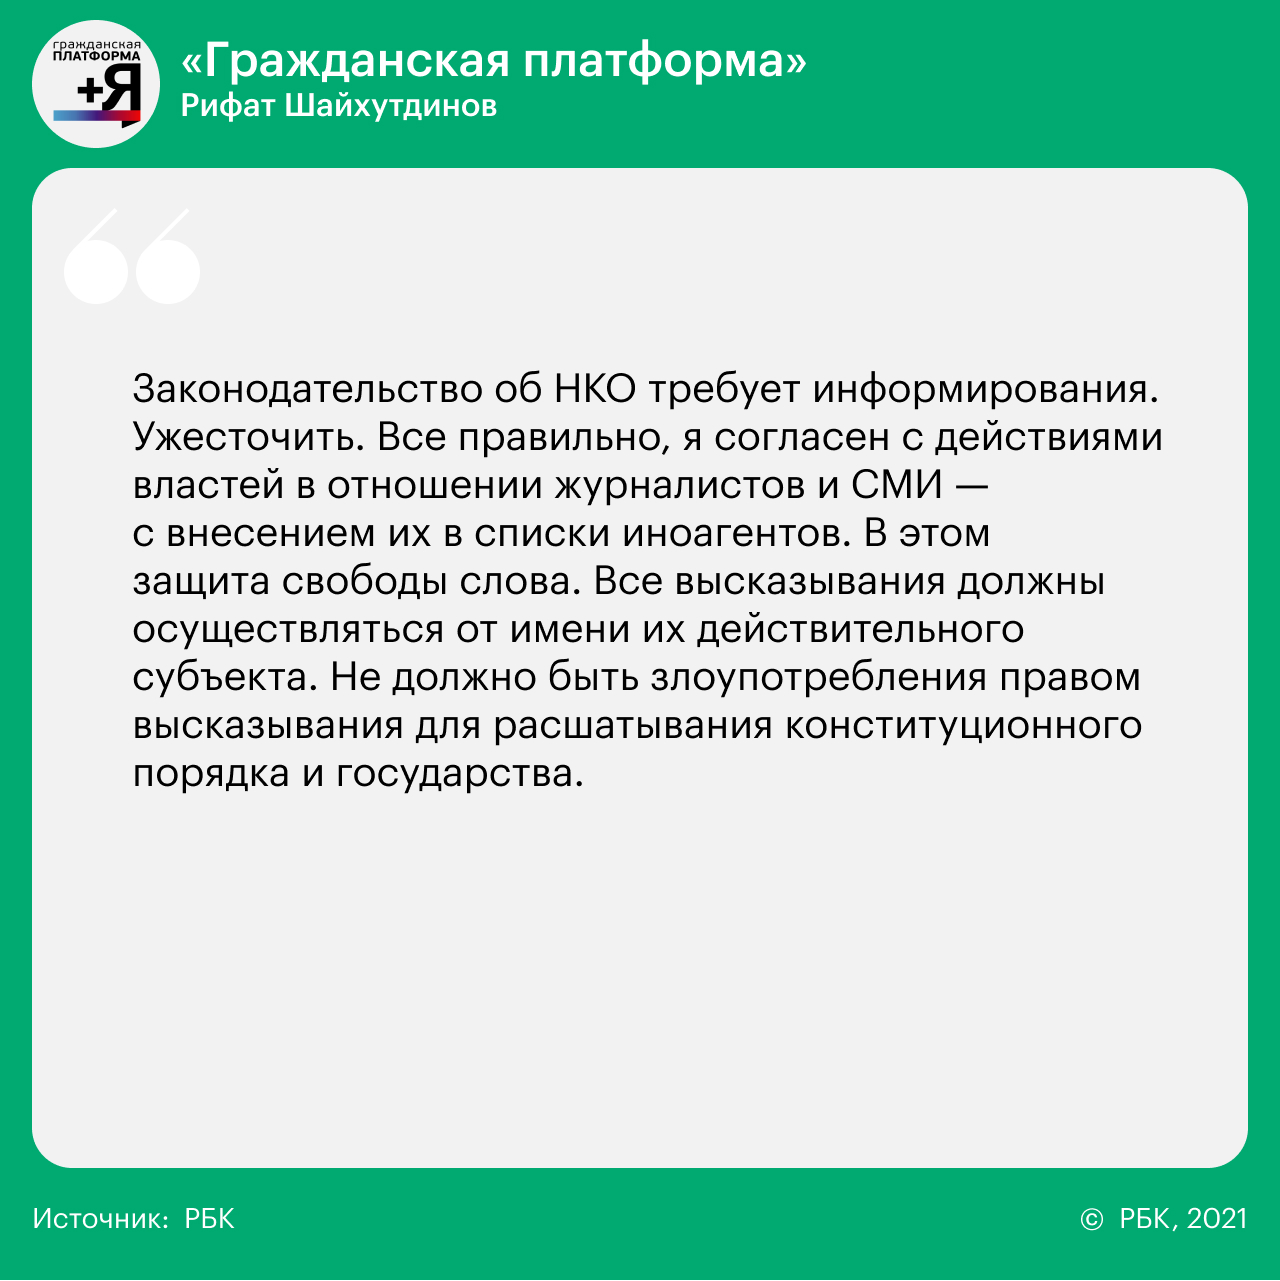 14 вопросов 14 партиям о реформах, Донбассе, Навальном и Ленине